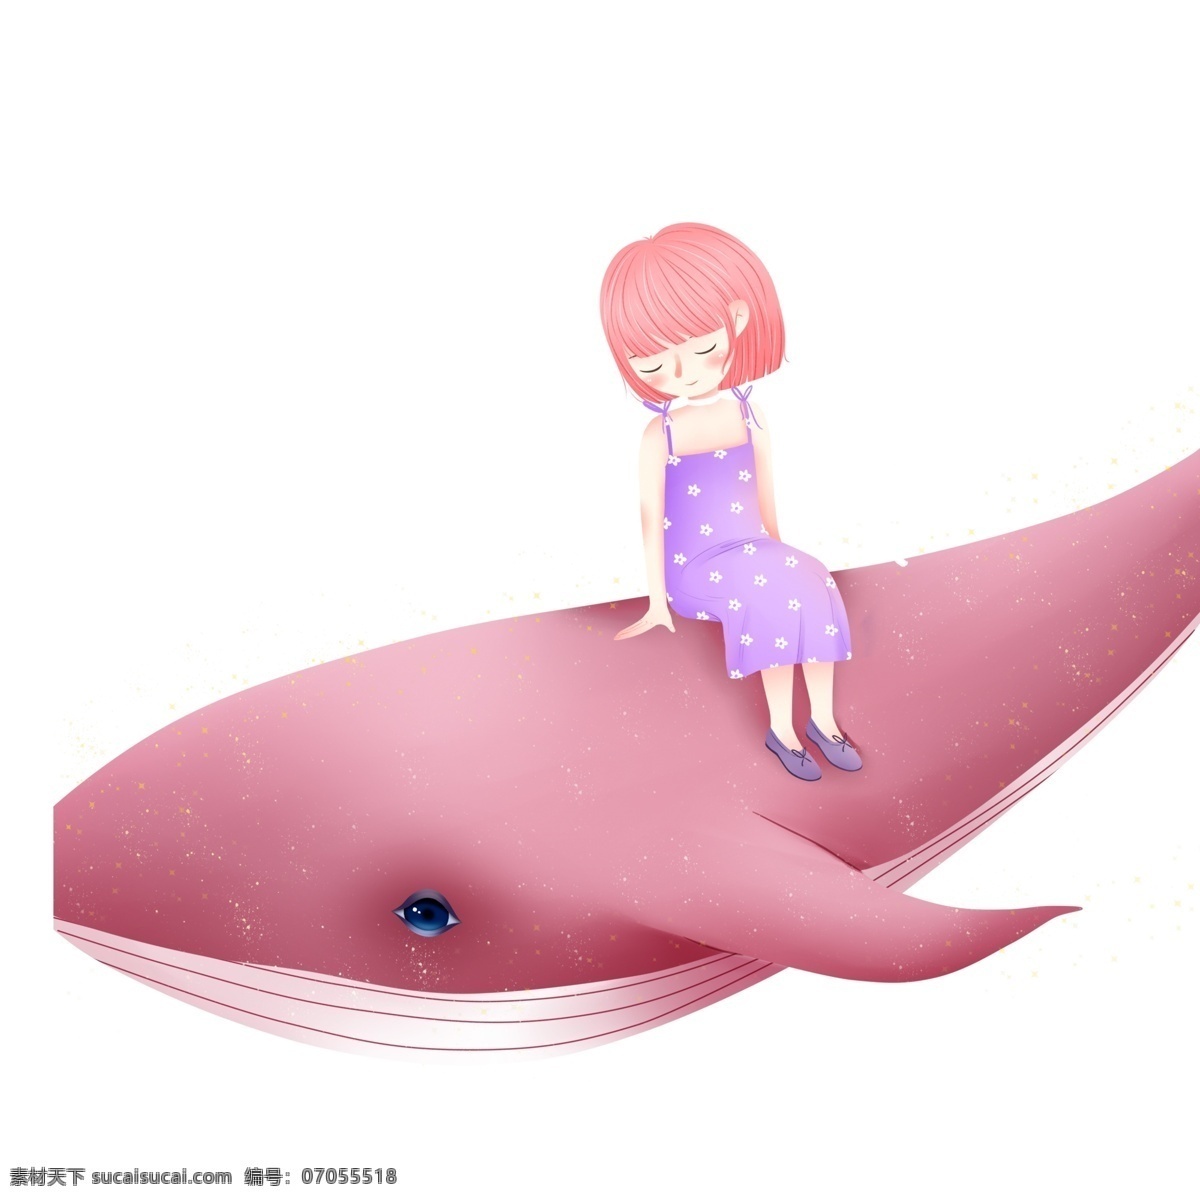 唯美 手绘 坐在 鲸鱼 上 女孩 卡通 插画 治愈系